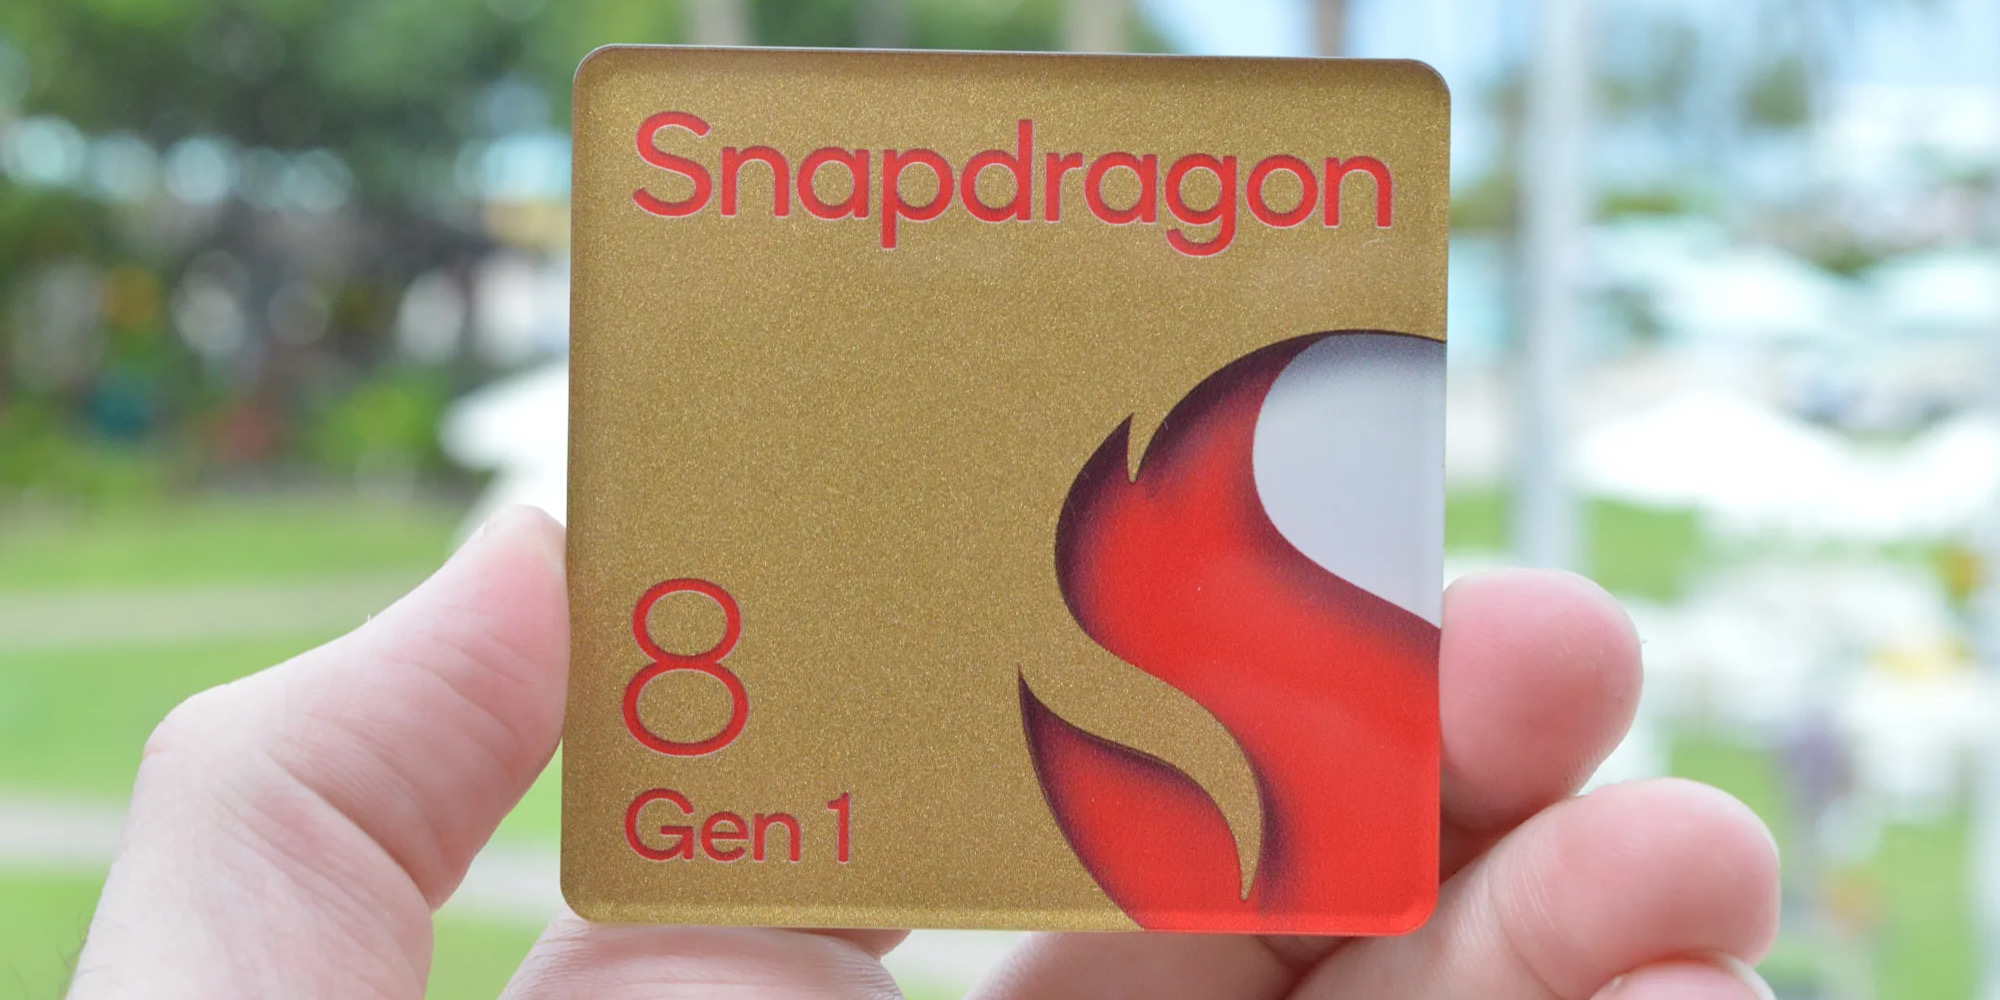 شرکت کوالکام Snapdragon 8 Gen 1